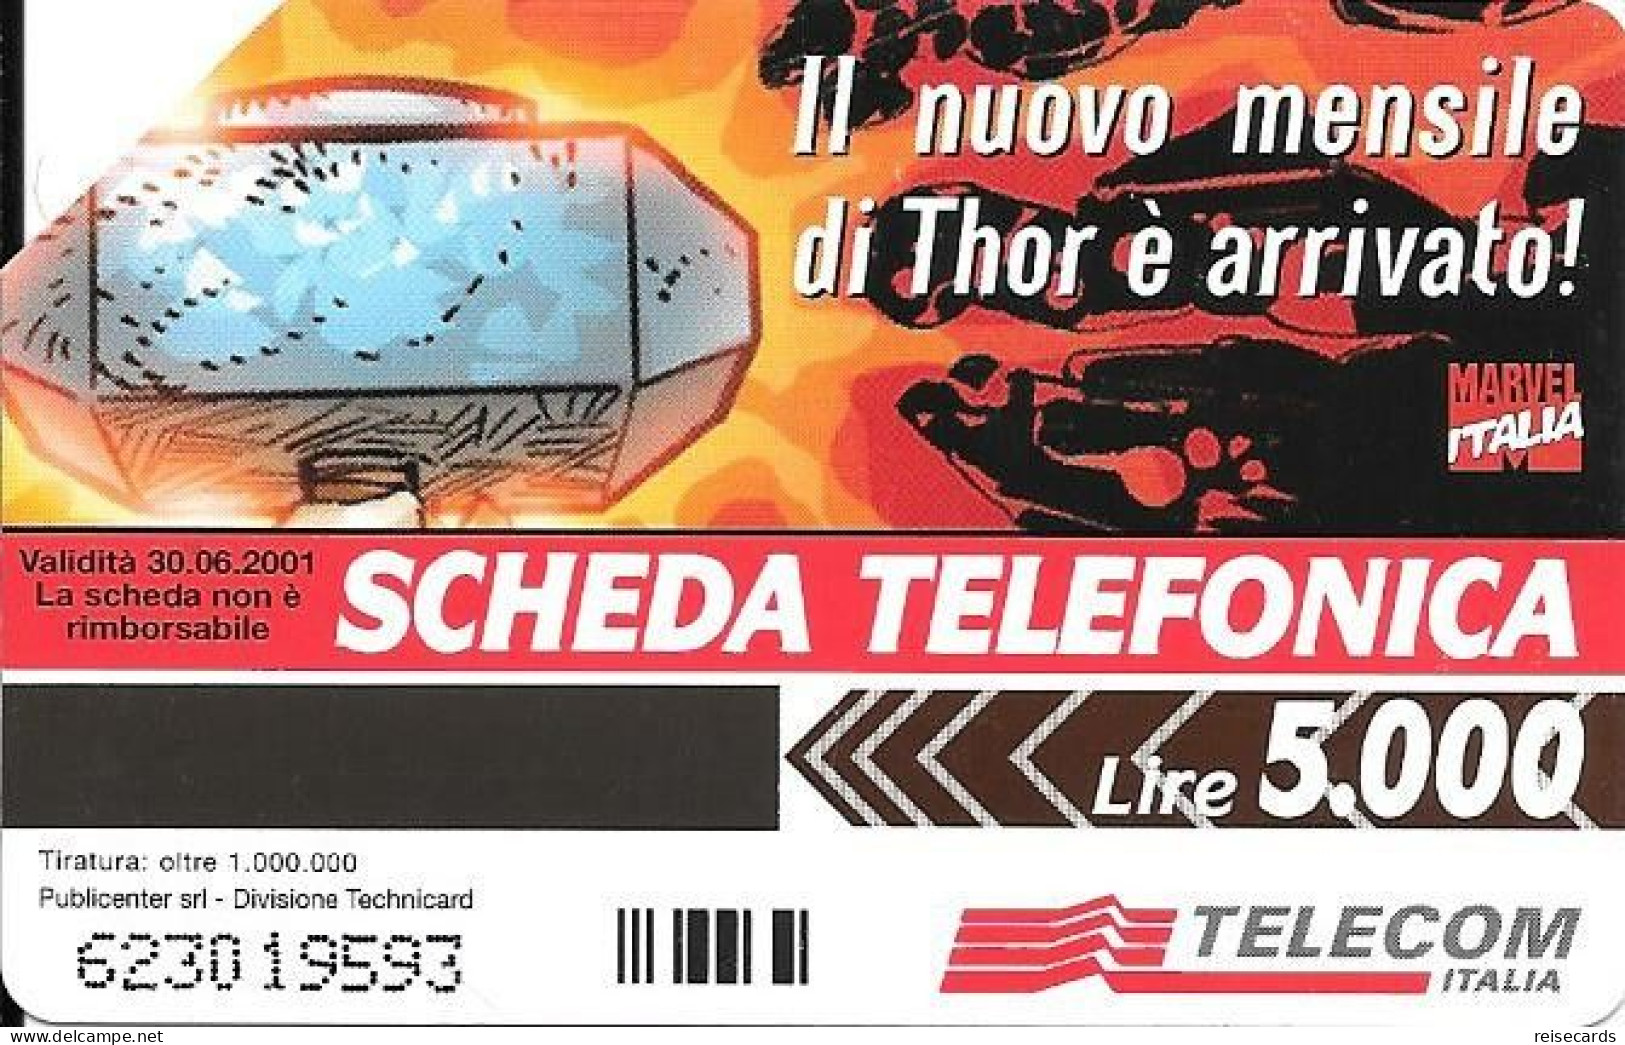 Italy: Telecom Italia - Marvel Comics, Thor - Públicas  Publicitarias